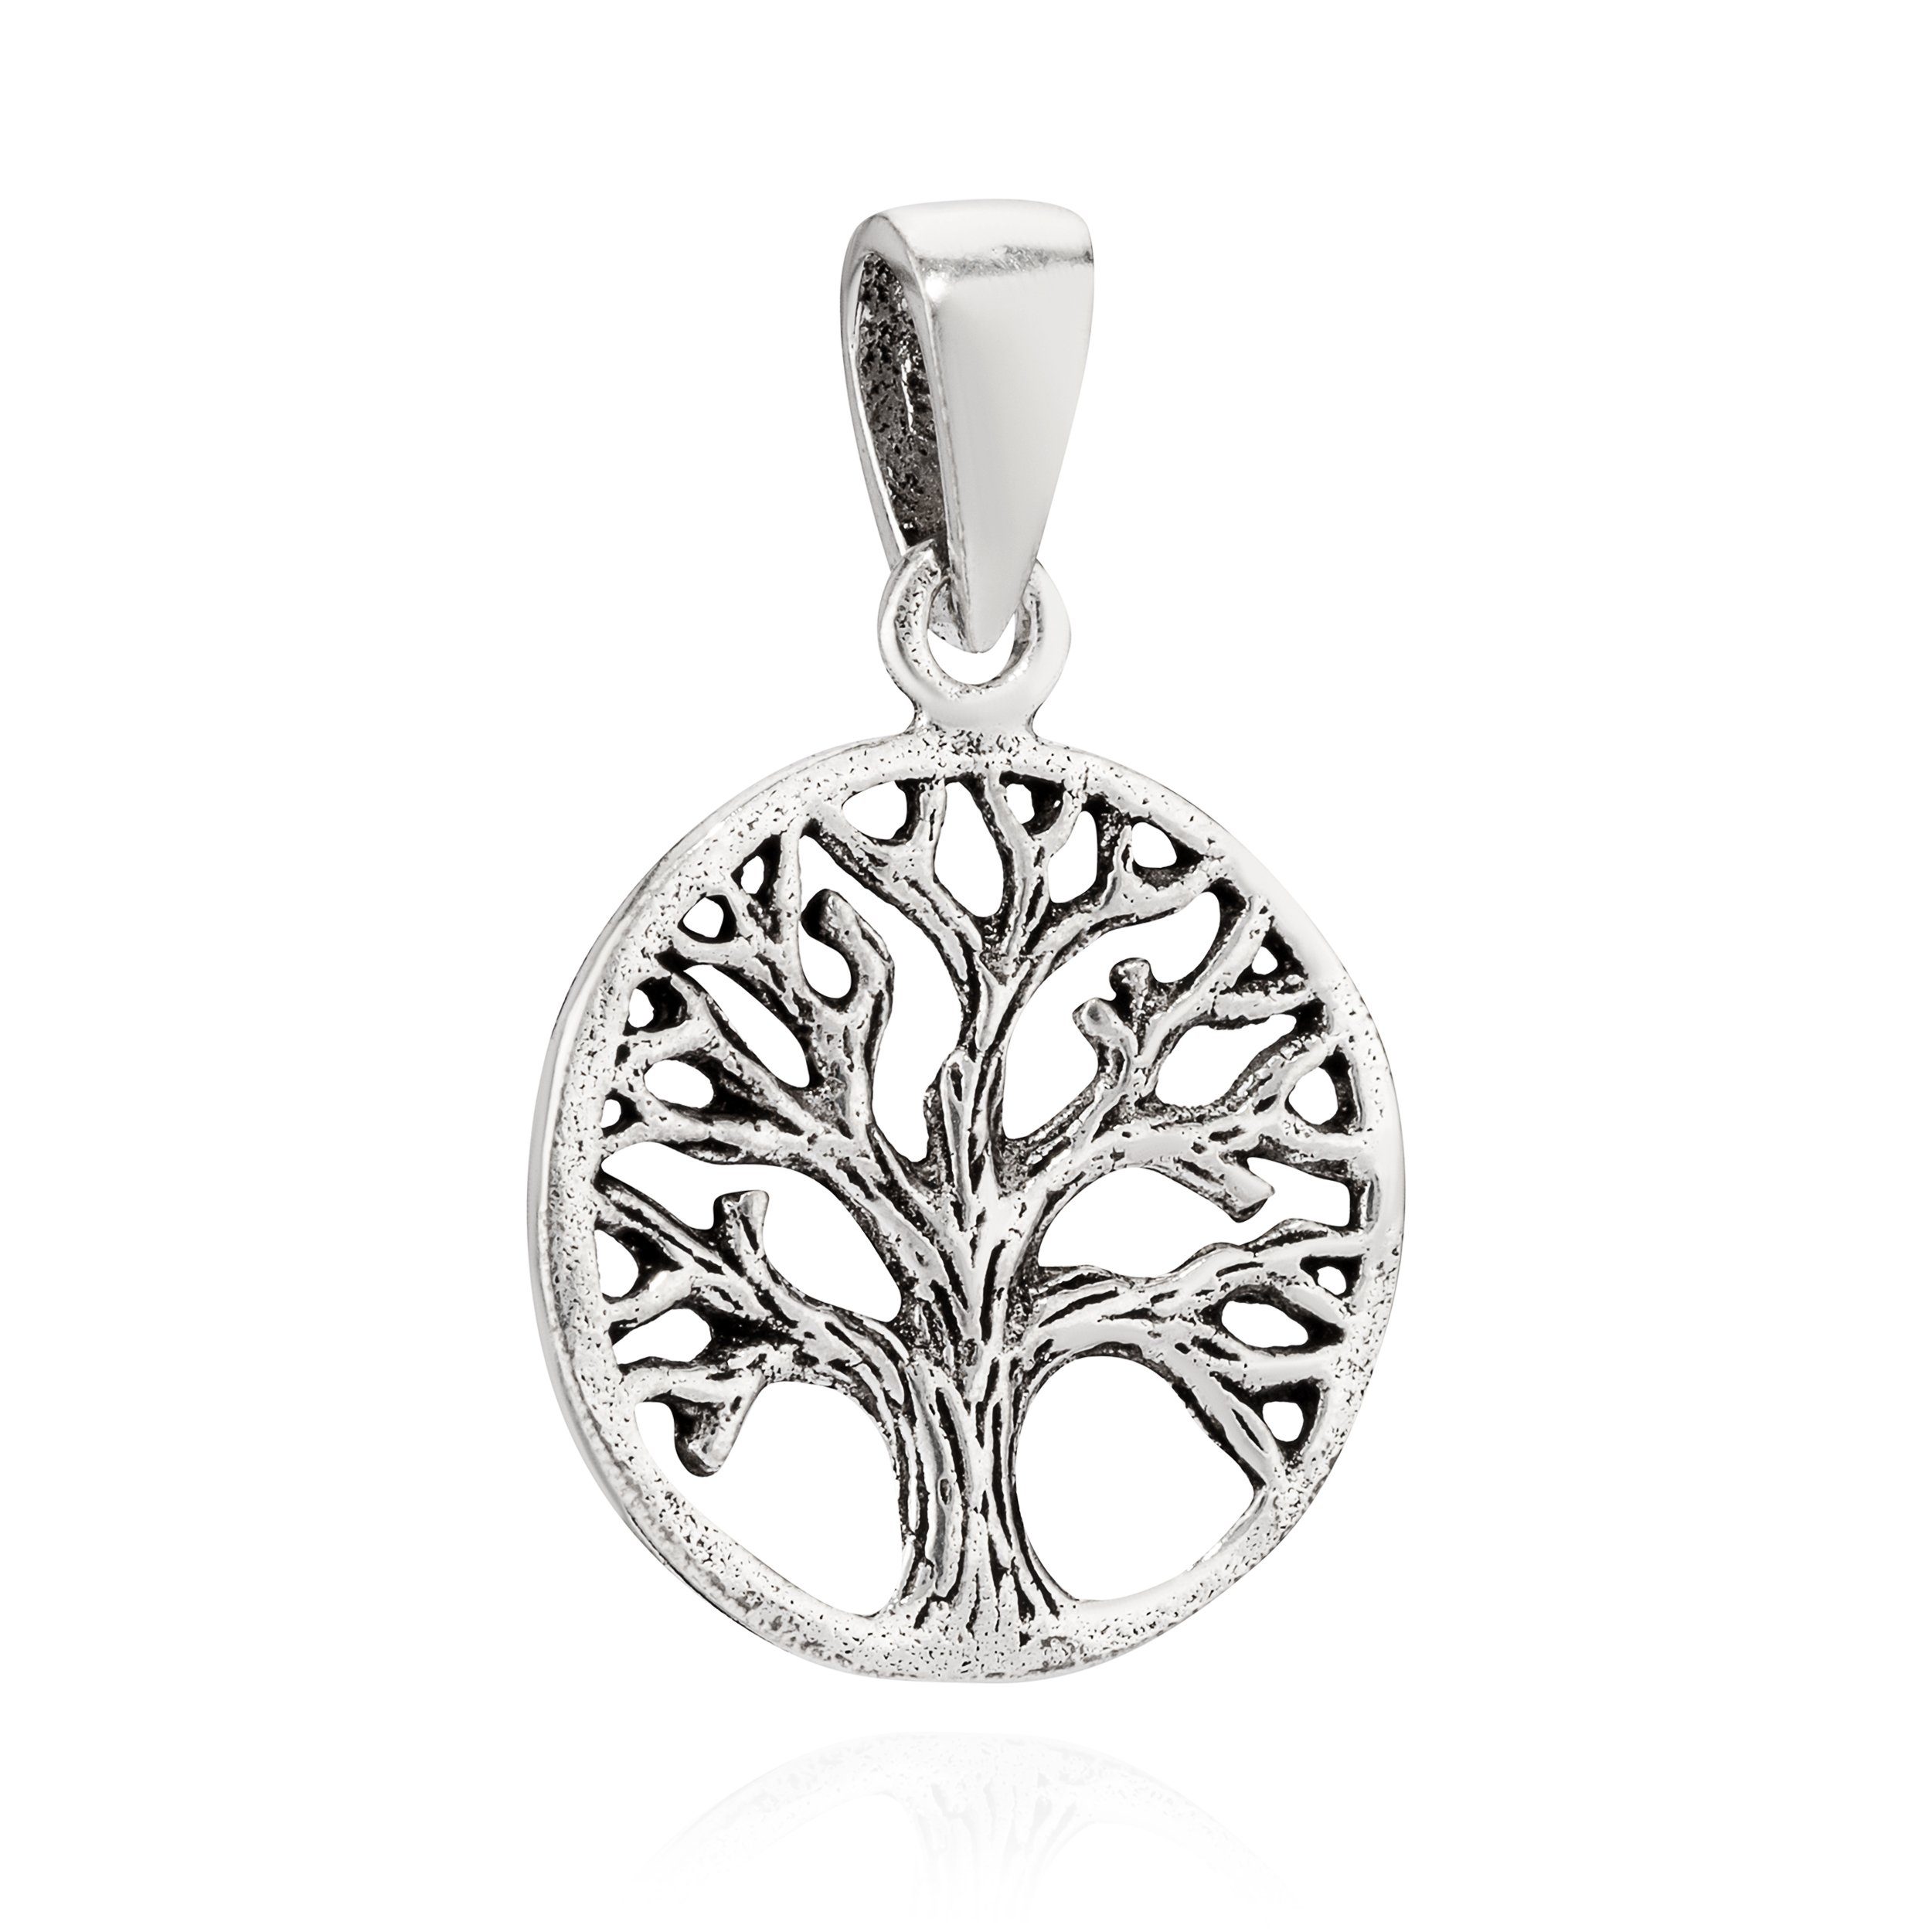 NKlaus Kettenanhänger Kettenanhänger Baum des Lebens 925 Silber 14mm Sil, 925 Sterling Silber Silberschmuck für Damen